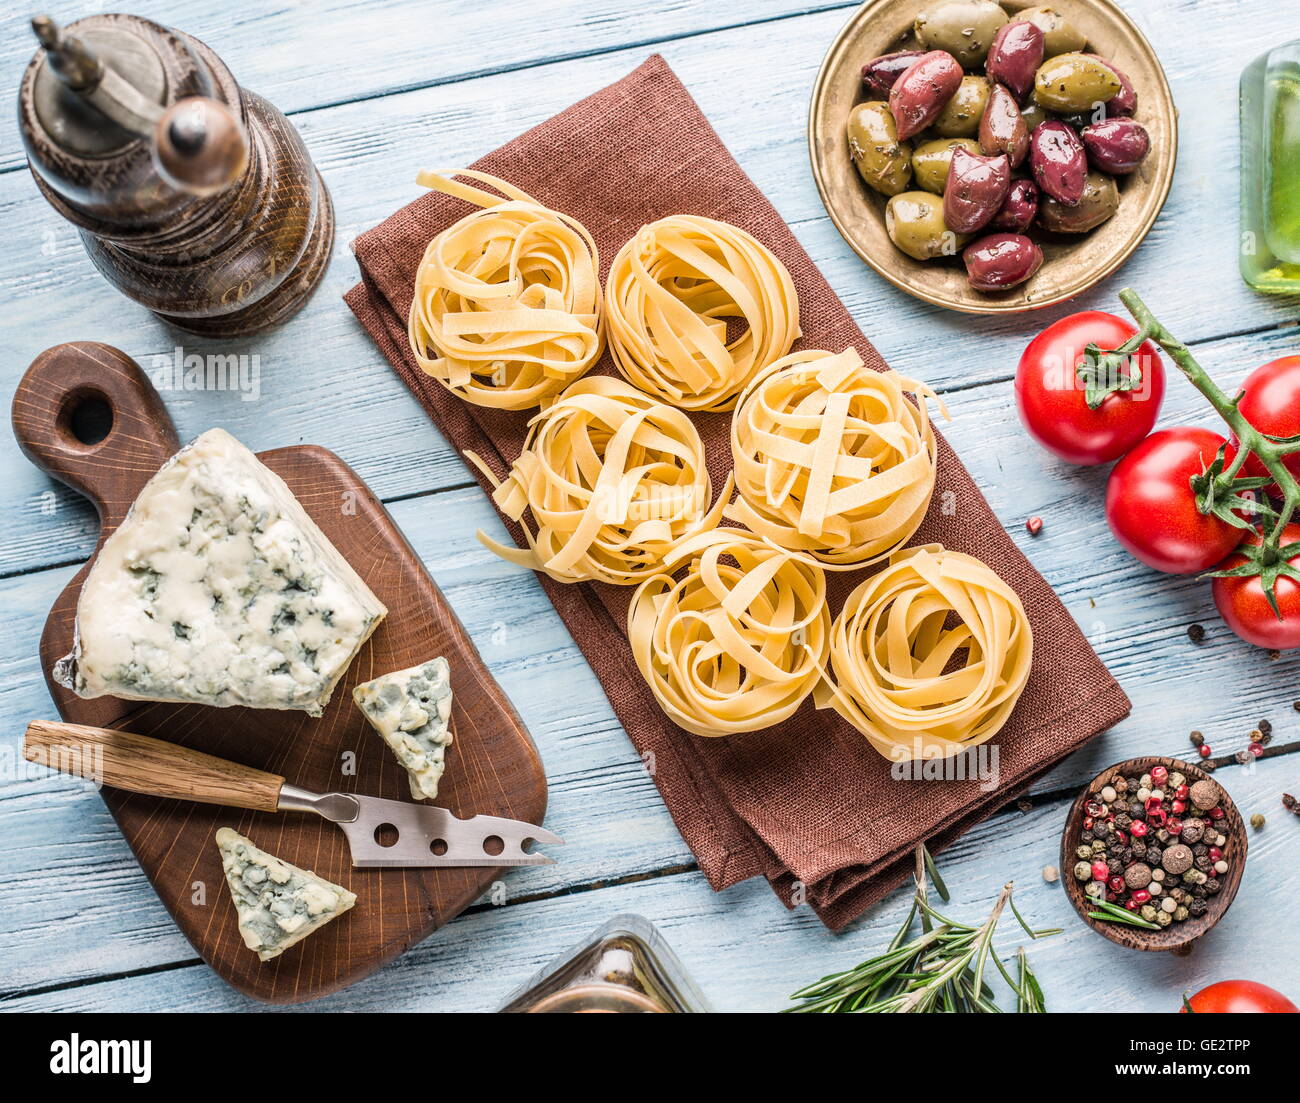 Ingredienti per la pasta. Cherry-pomodori, spaghetti, rosmarino e spezie sul tavolo di legno. Foto Stock